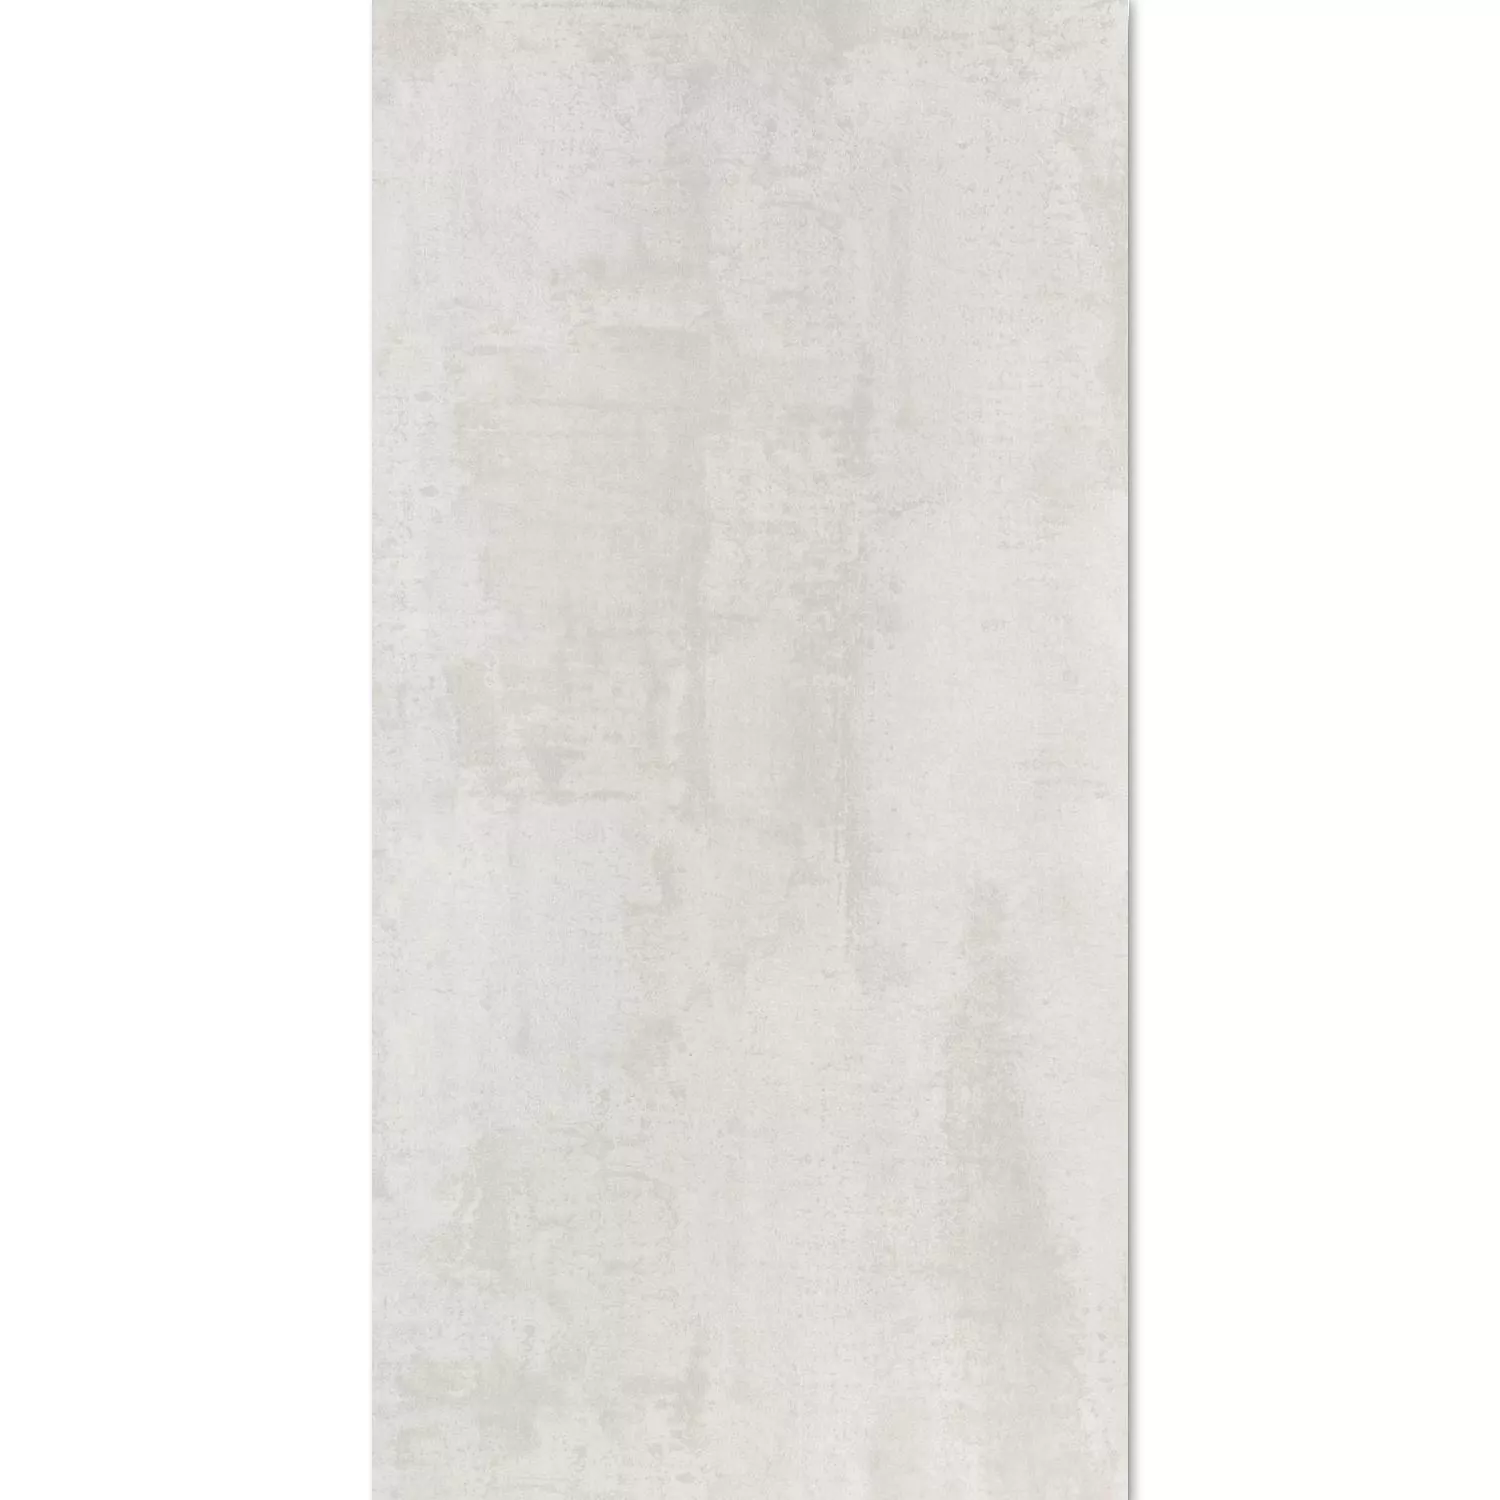 Плочки За Под Herion Метален Вид Lappato Blanco 45x90cm